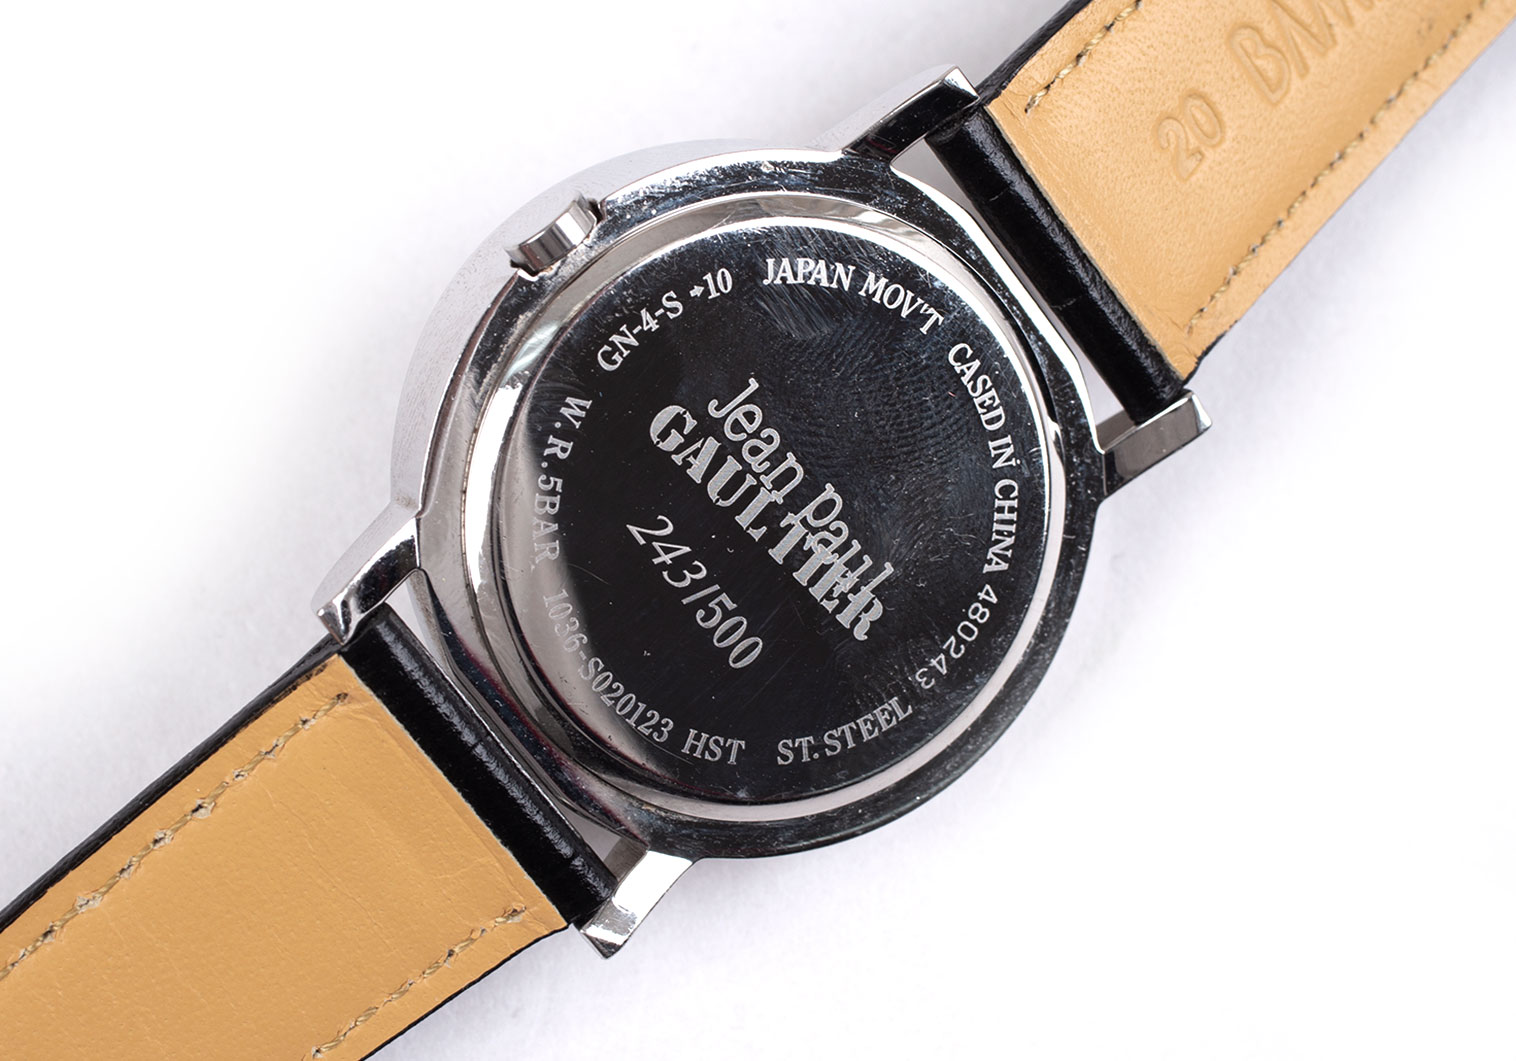 17,395円Jean-Paul GAULTIER ロゴ入り腕時計